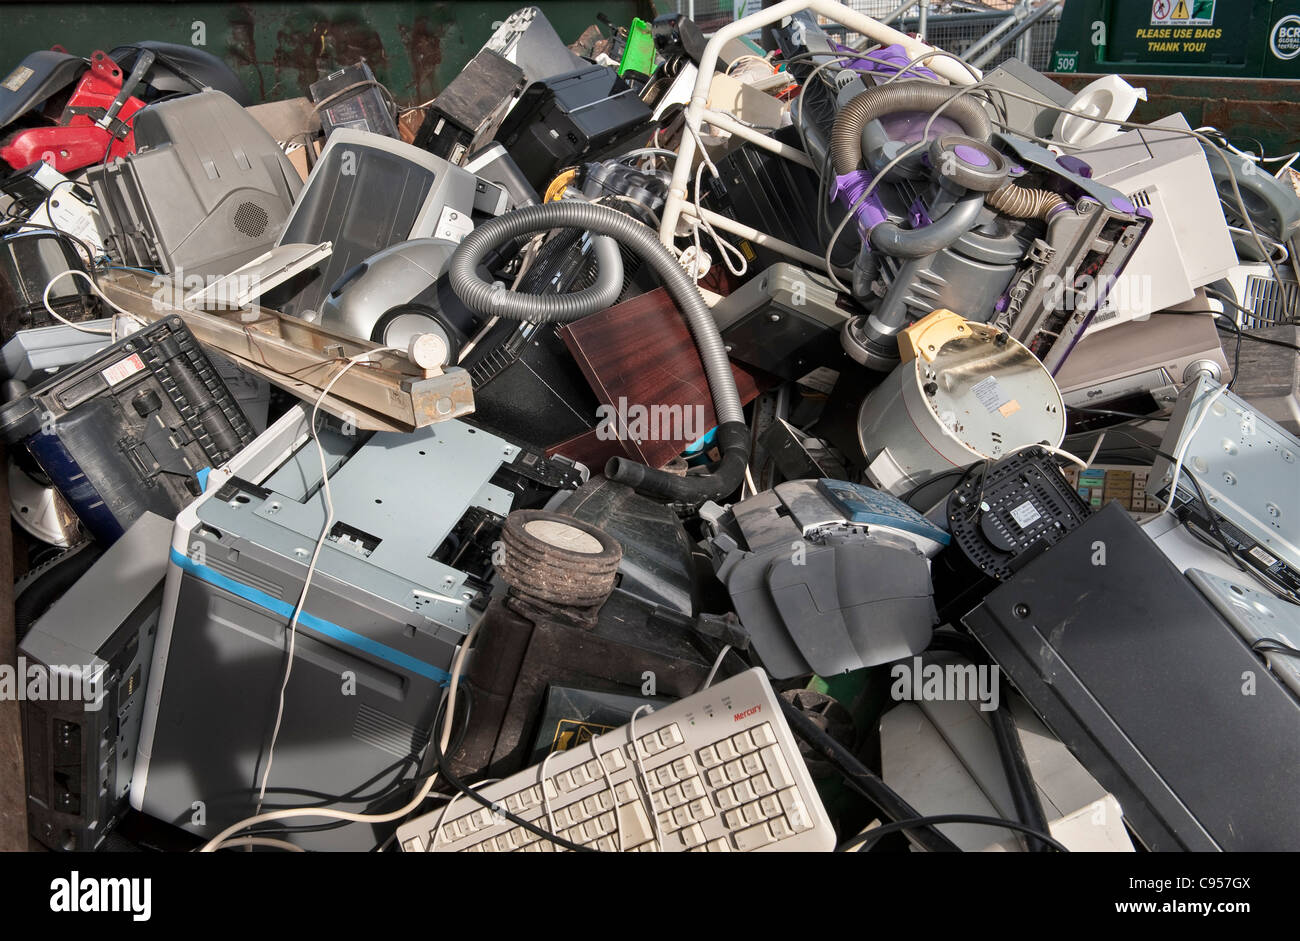 Equipos eléctricos desechados - ordenadores, impresoras, aspiradores, monitores, etc. - en un centro de reciclaje en el Reino Unido Foto de stock